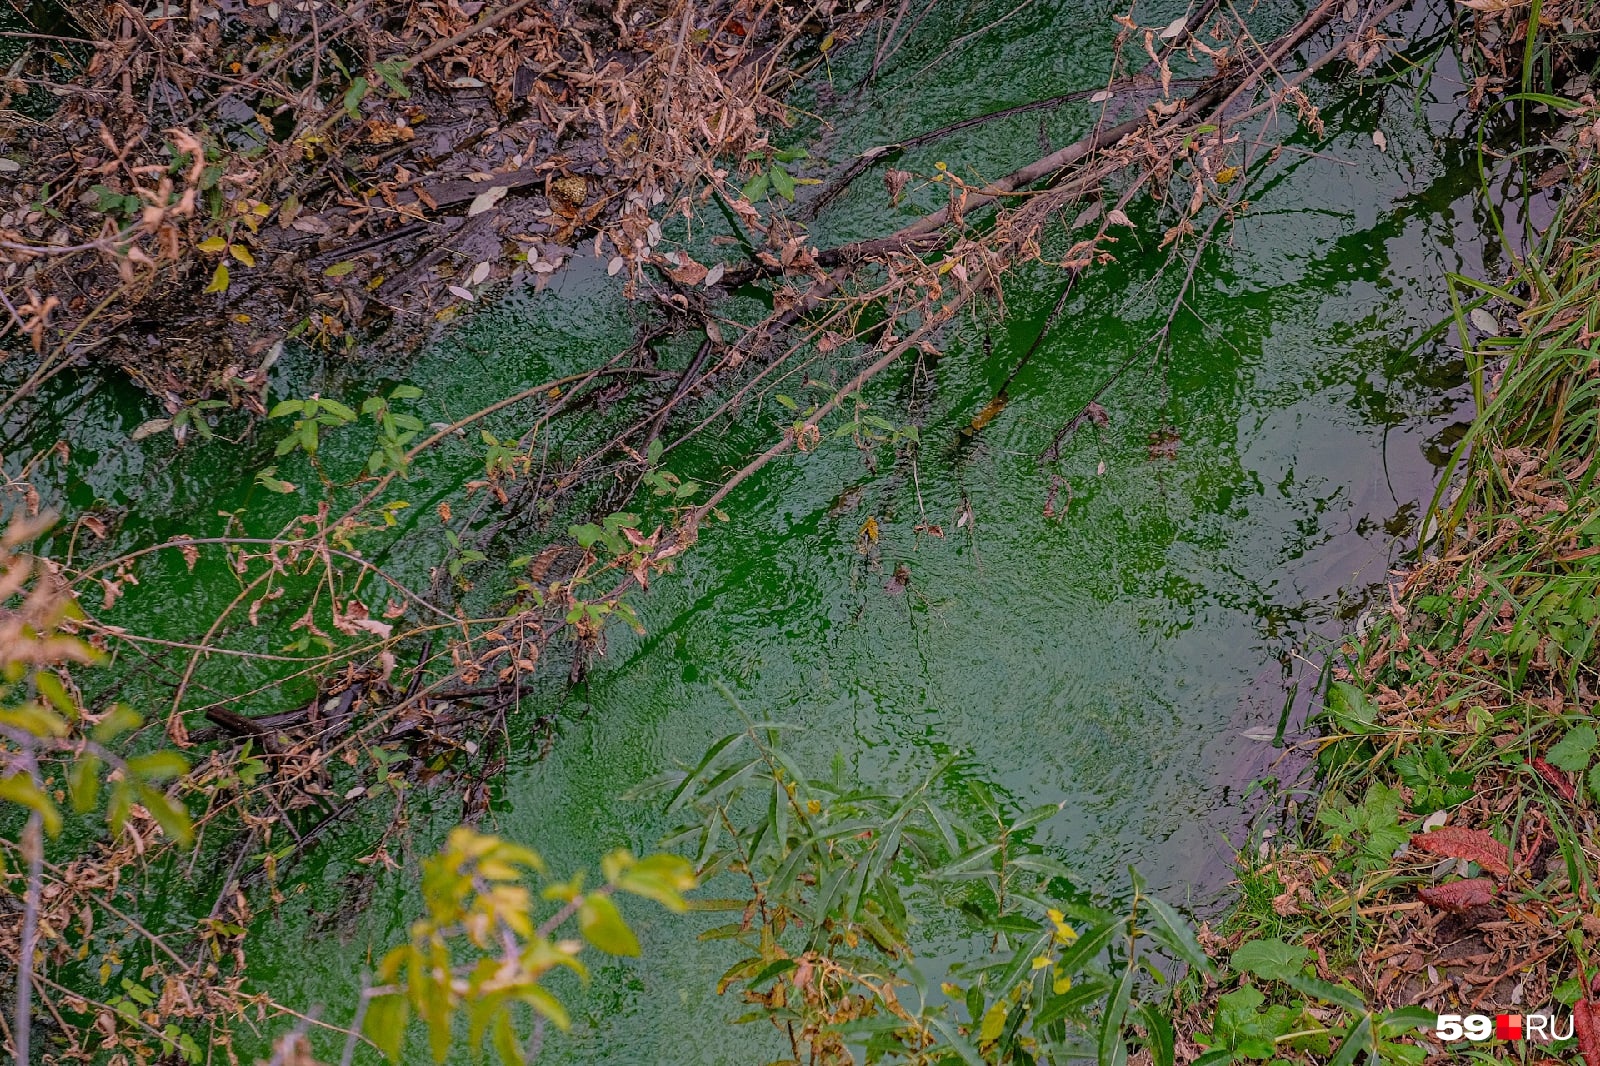 Вблизи река выглядит еще зеленее